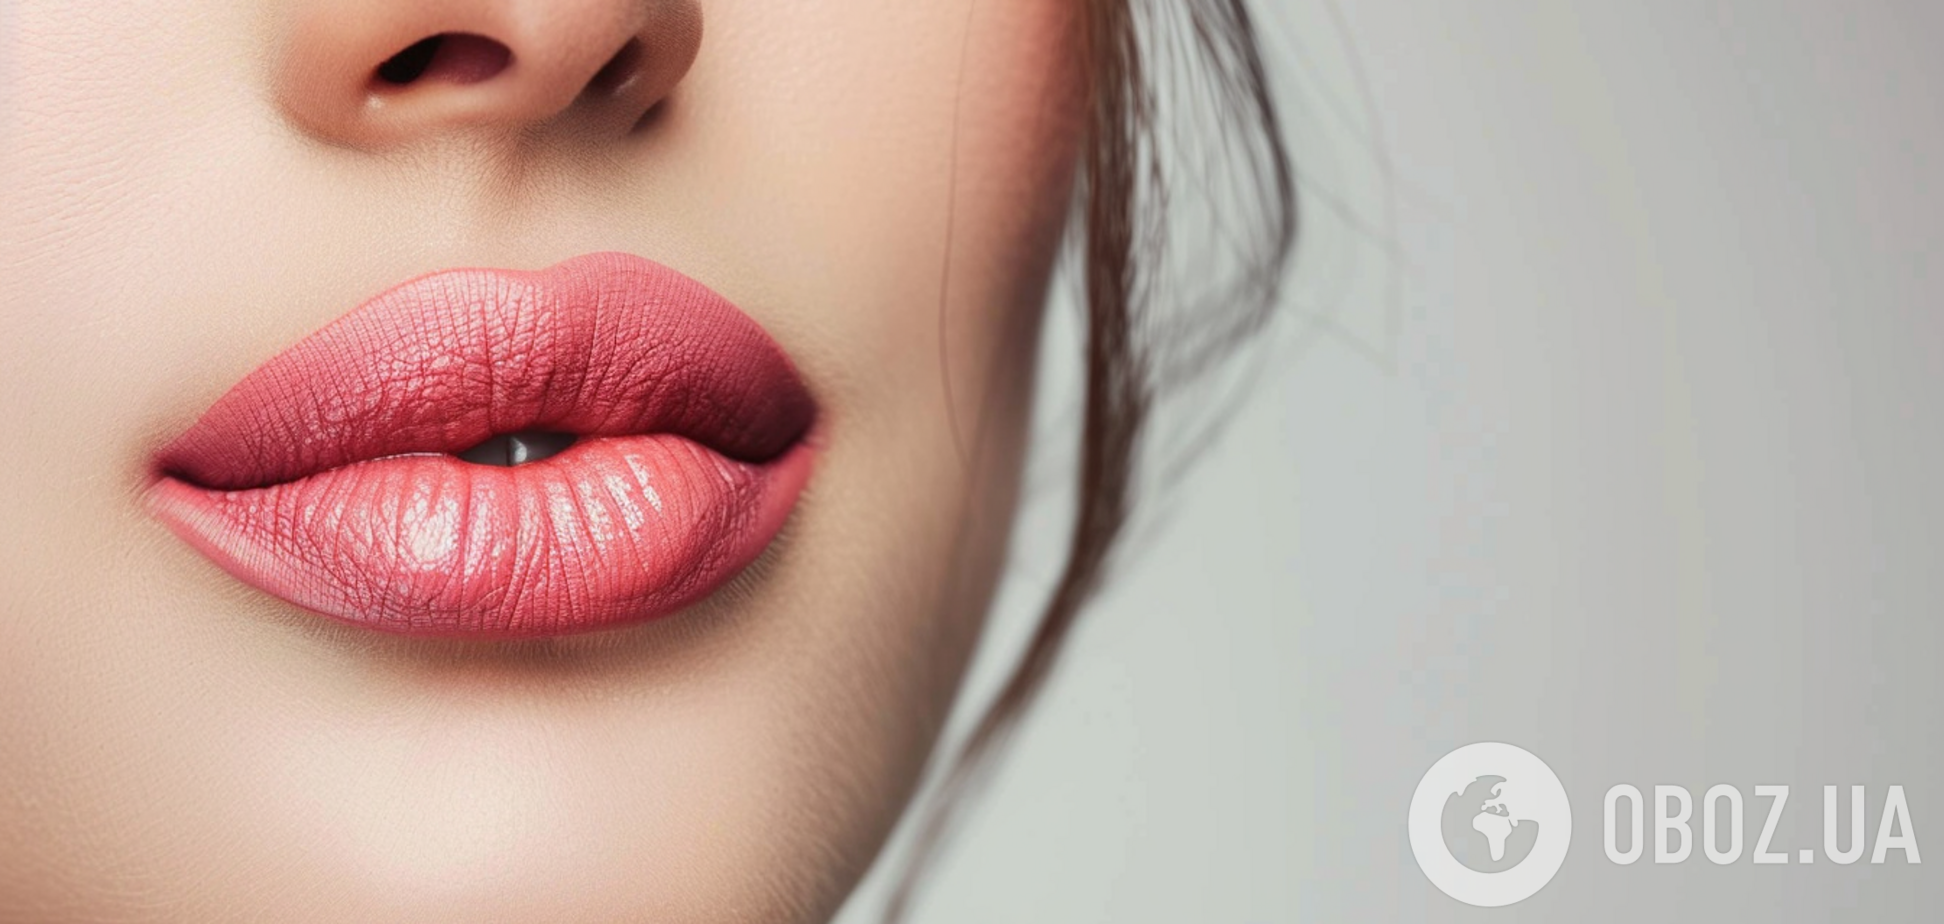 Как красить губы, чтобы выглядеть гораздо моложе: совет визажиста